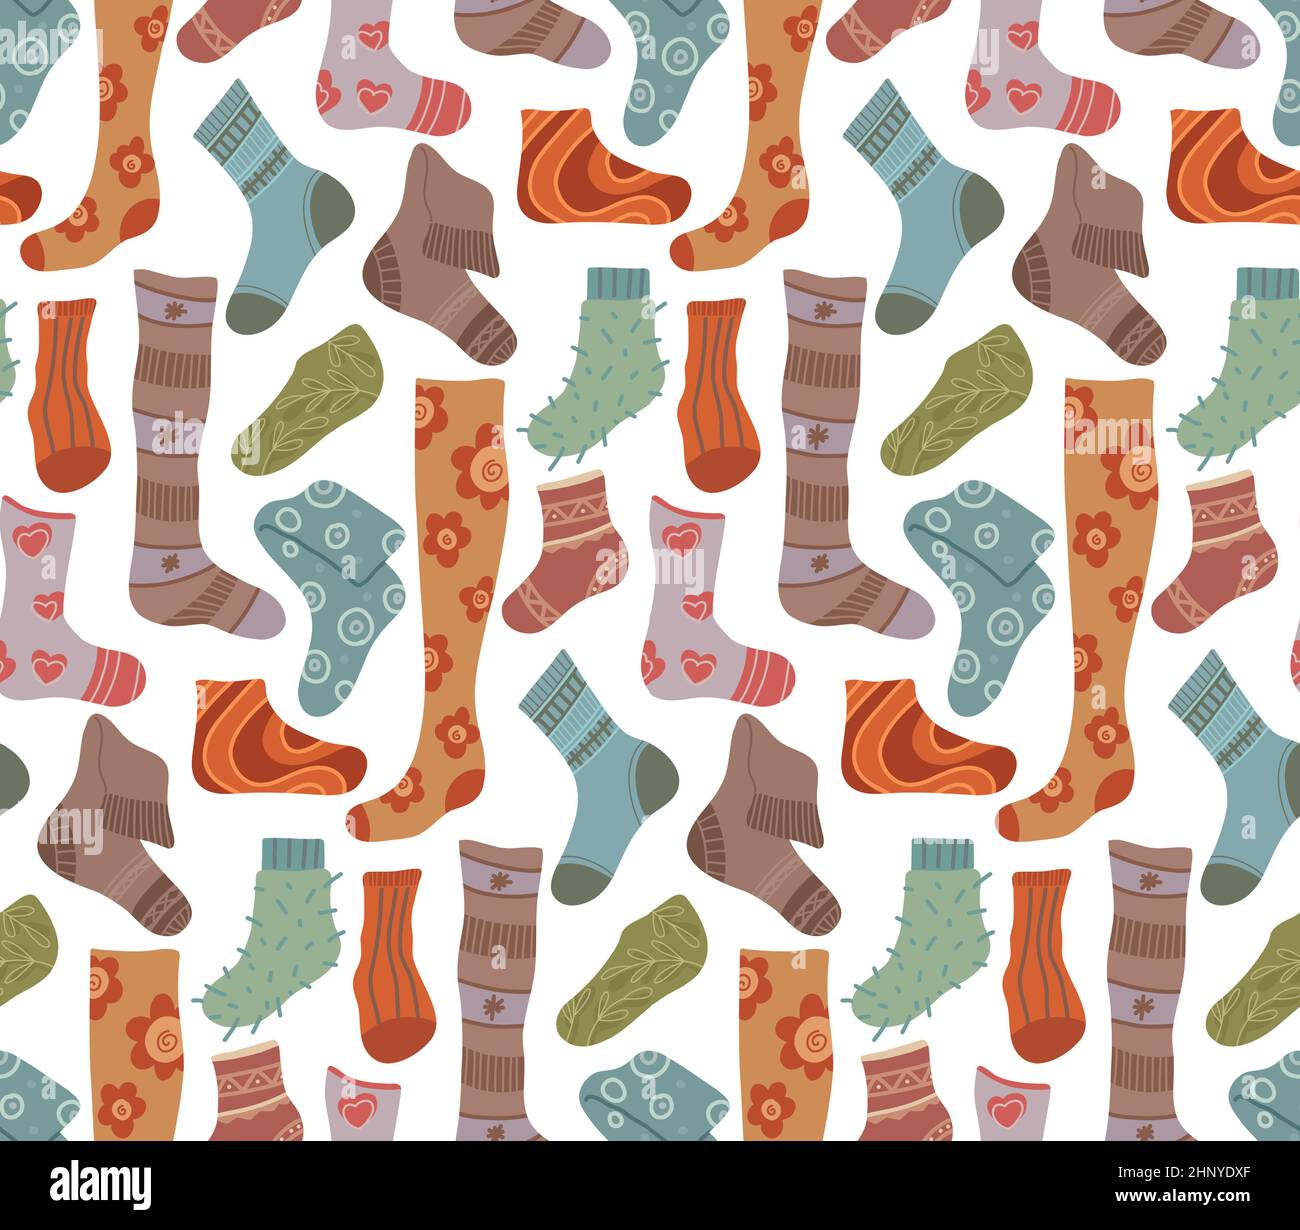 Socks Pattern Images - Free Download on Freepik